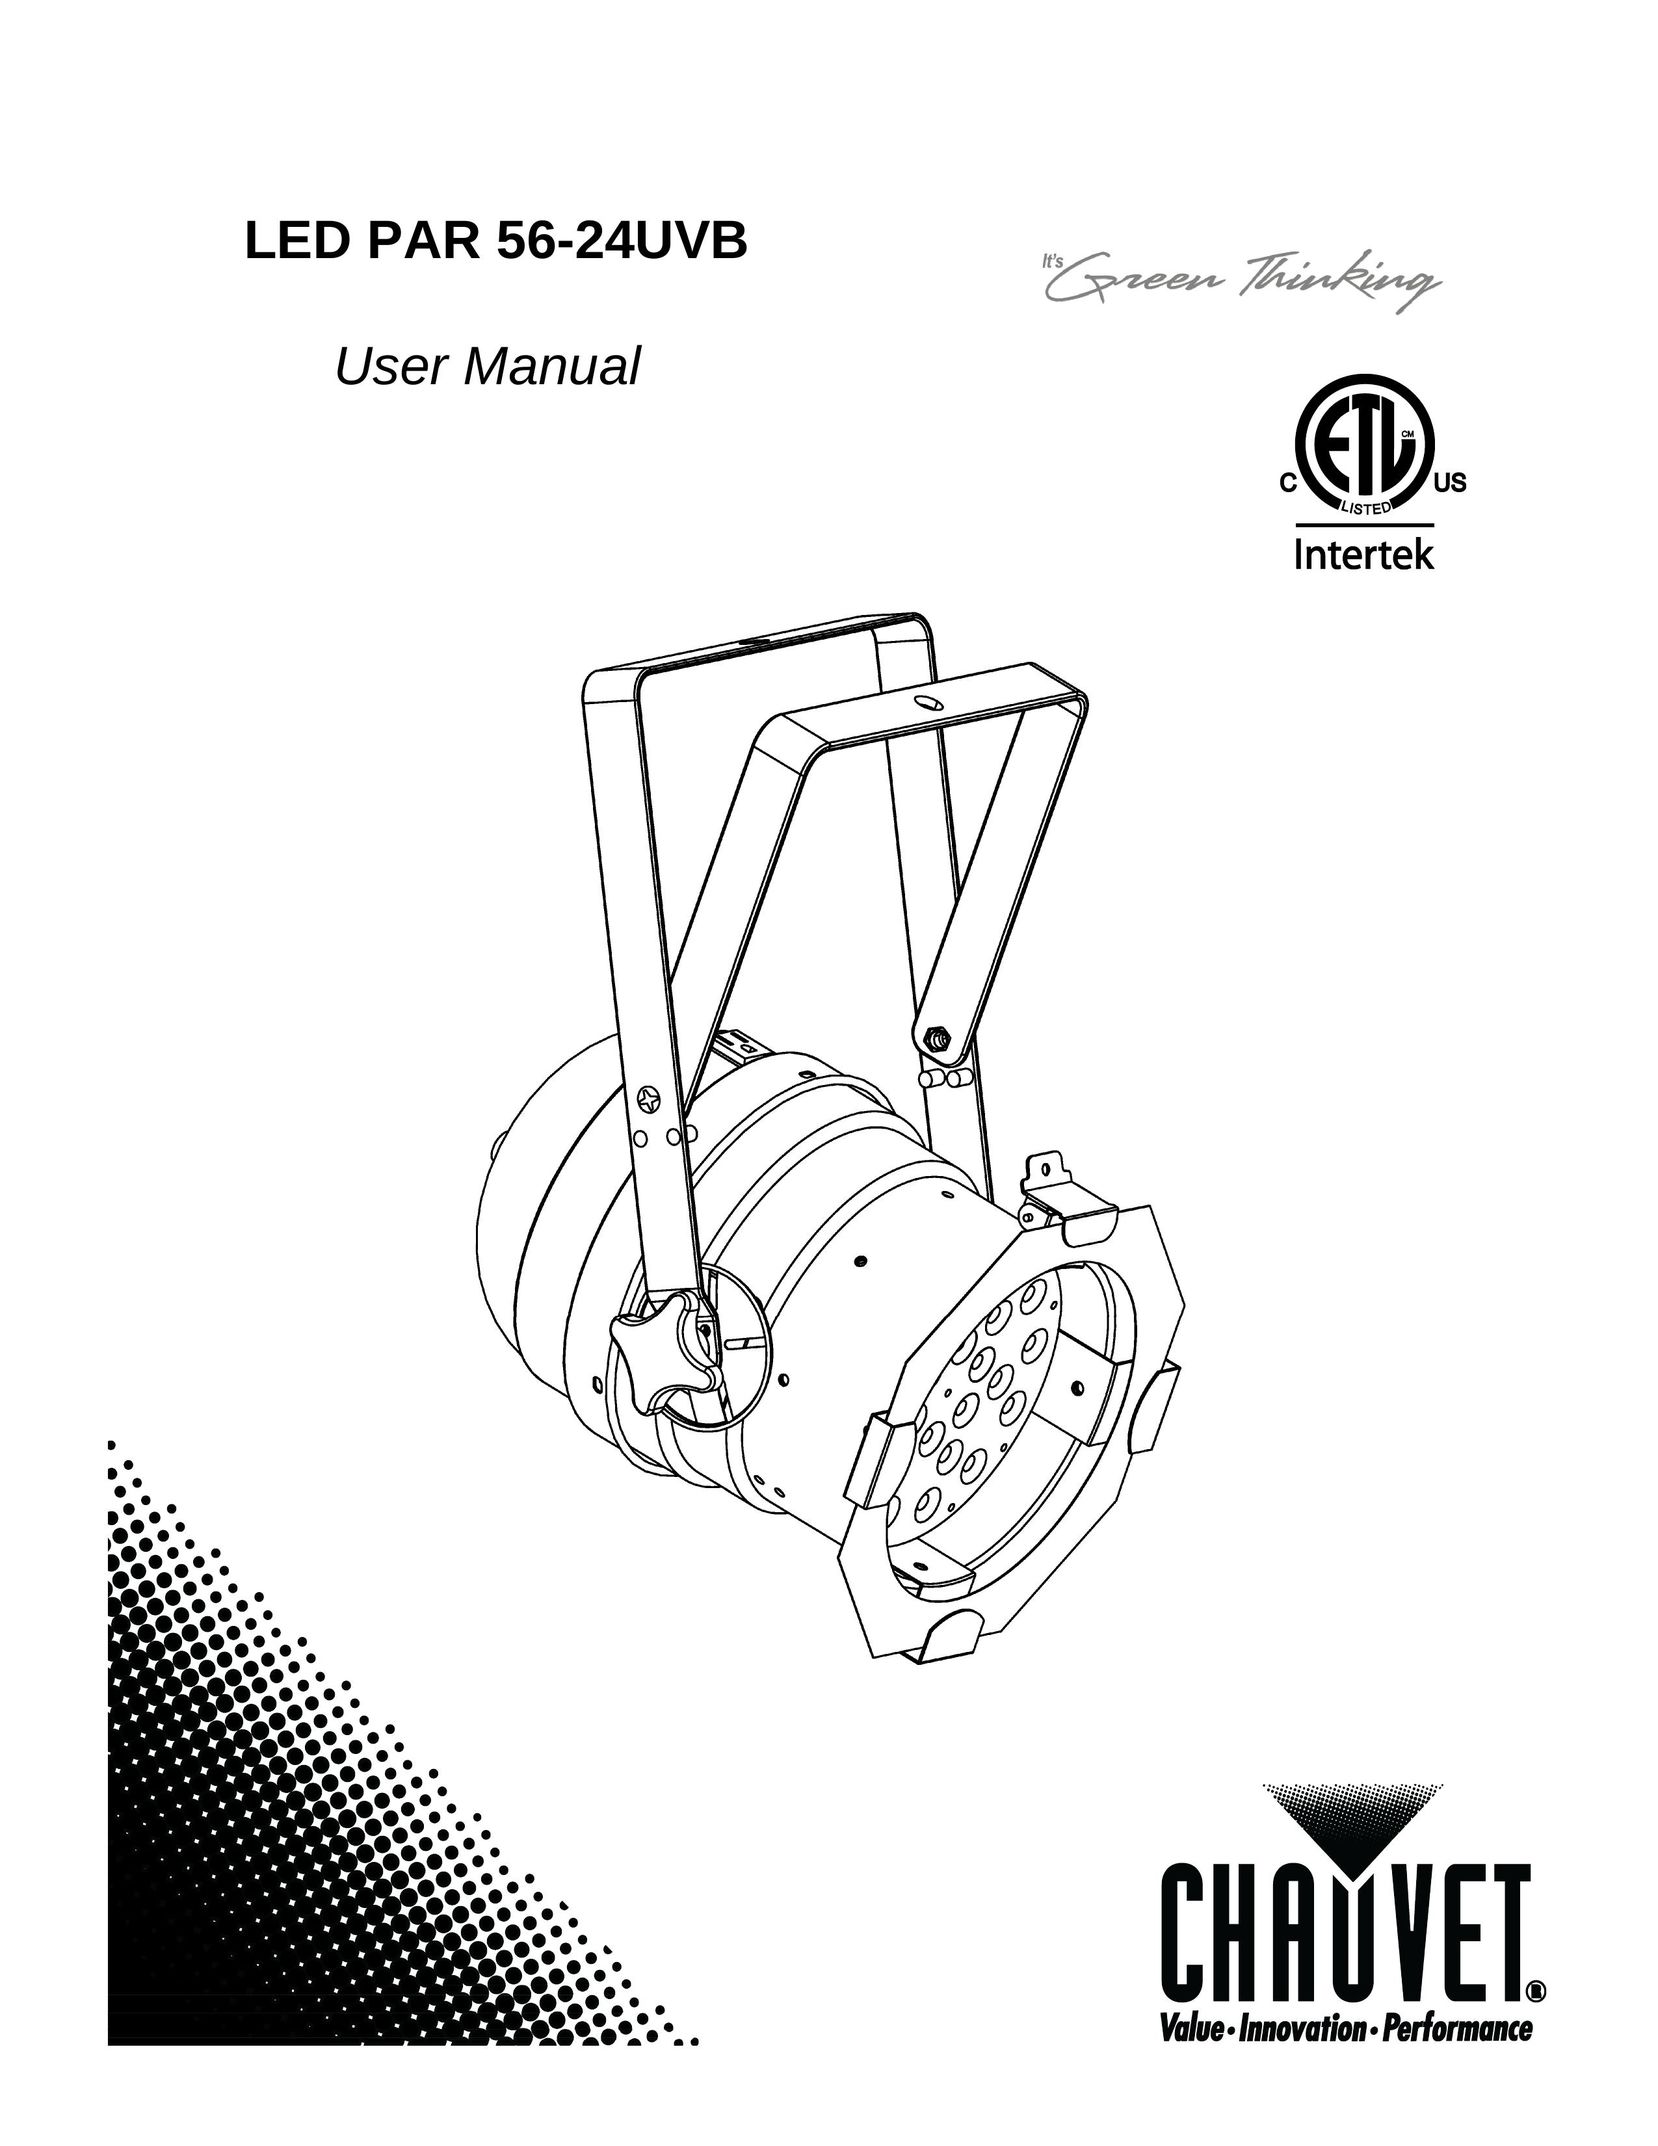 Chauvet 56-24UVB Work Light User Manual